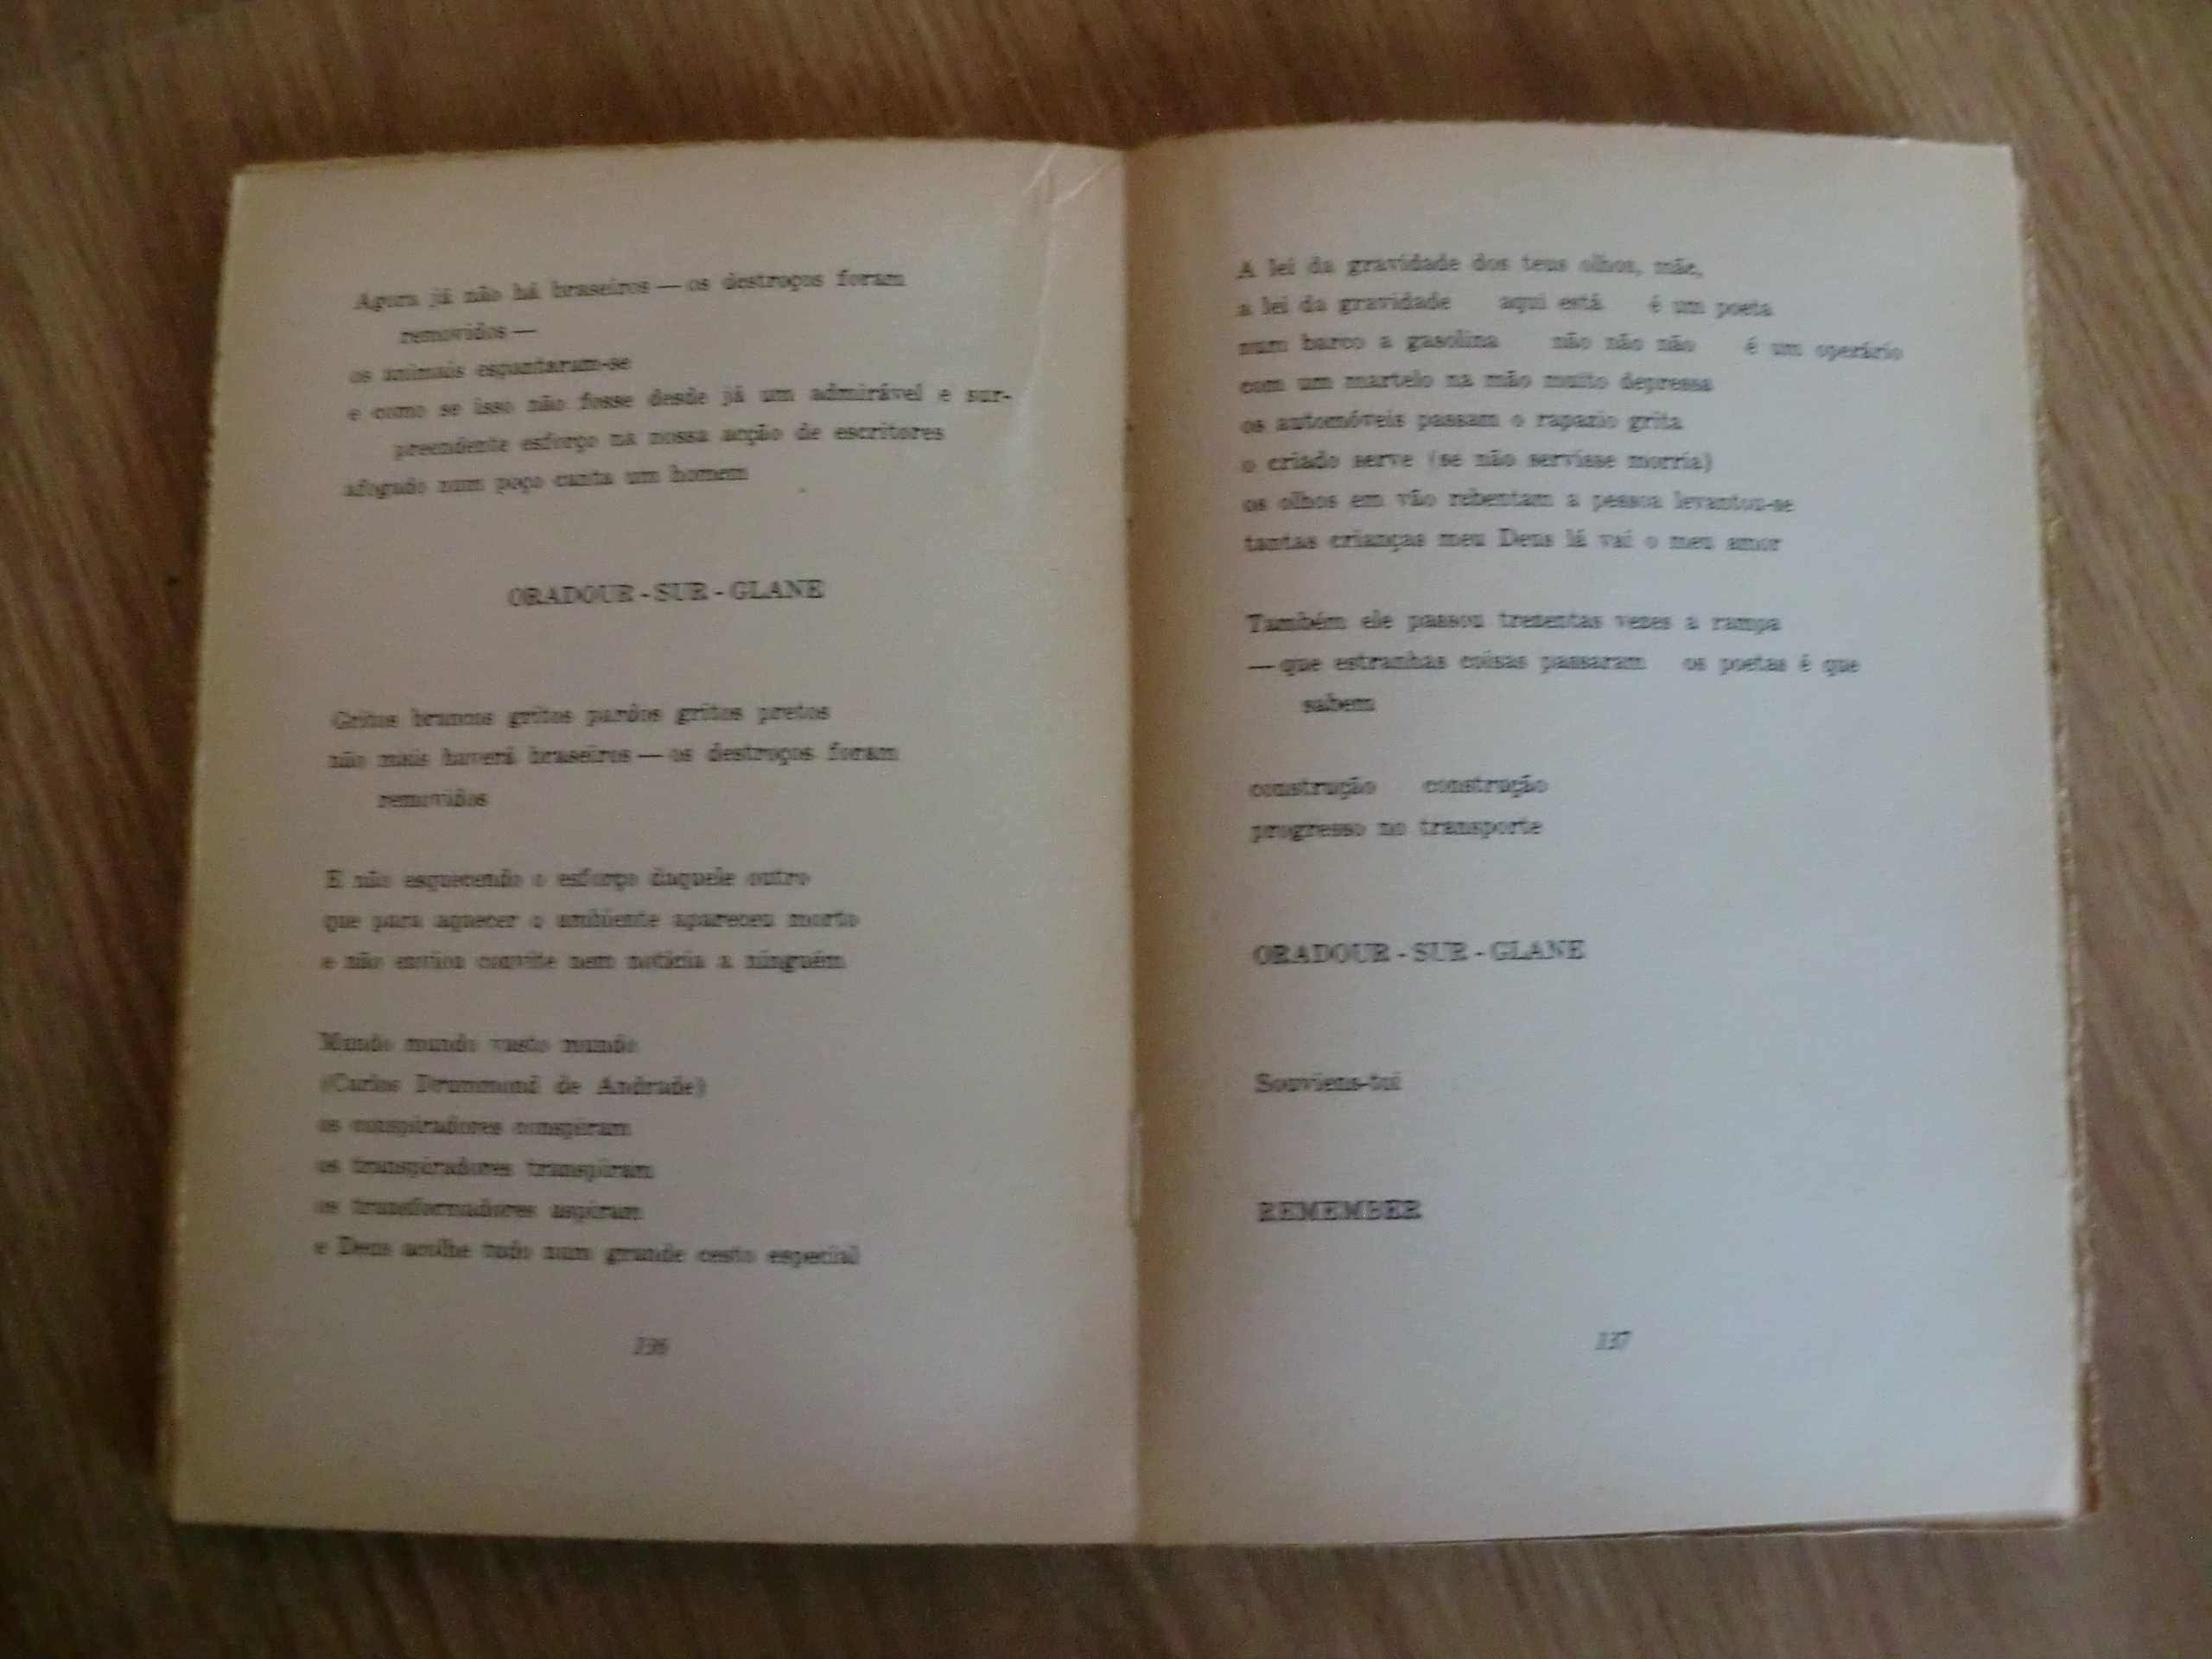 Poesia (1944/1955)
de Mário Cesariny de Vasconcelos - 1ª Edição